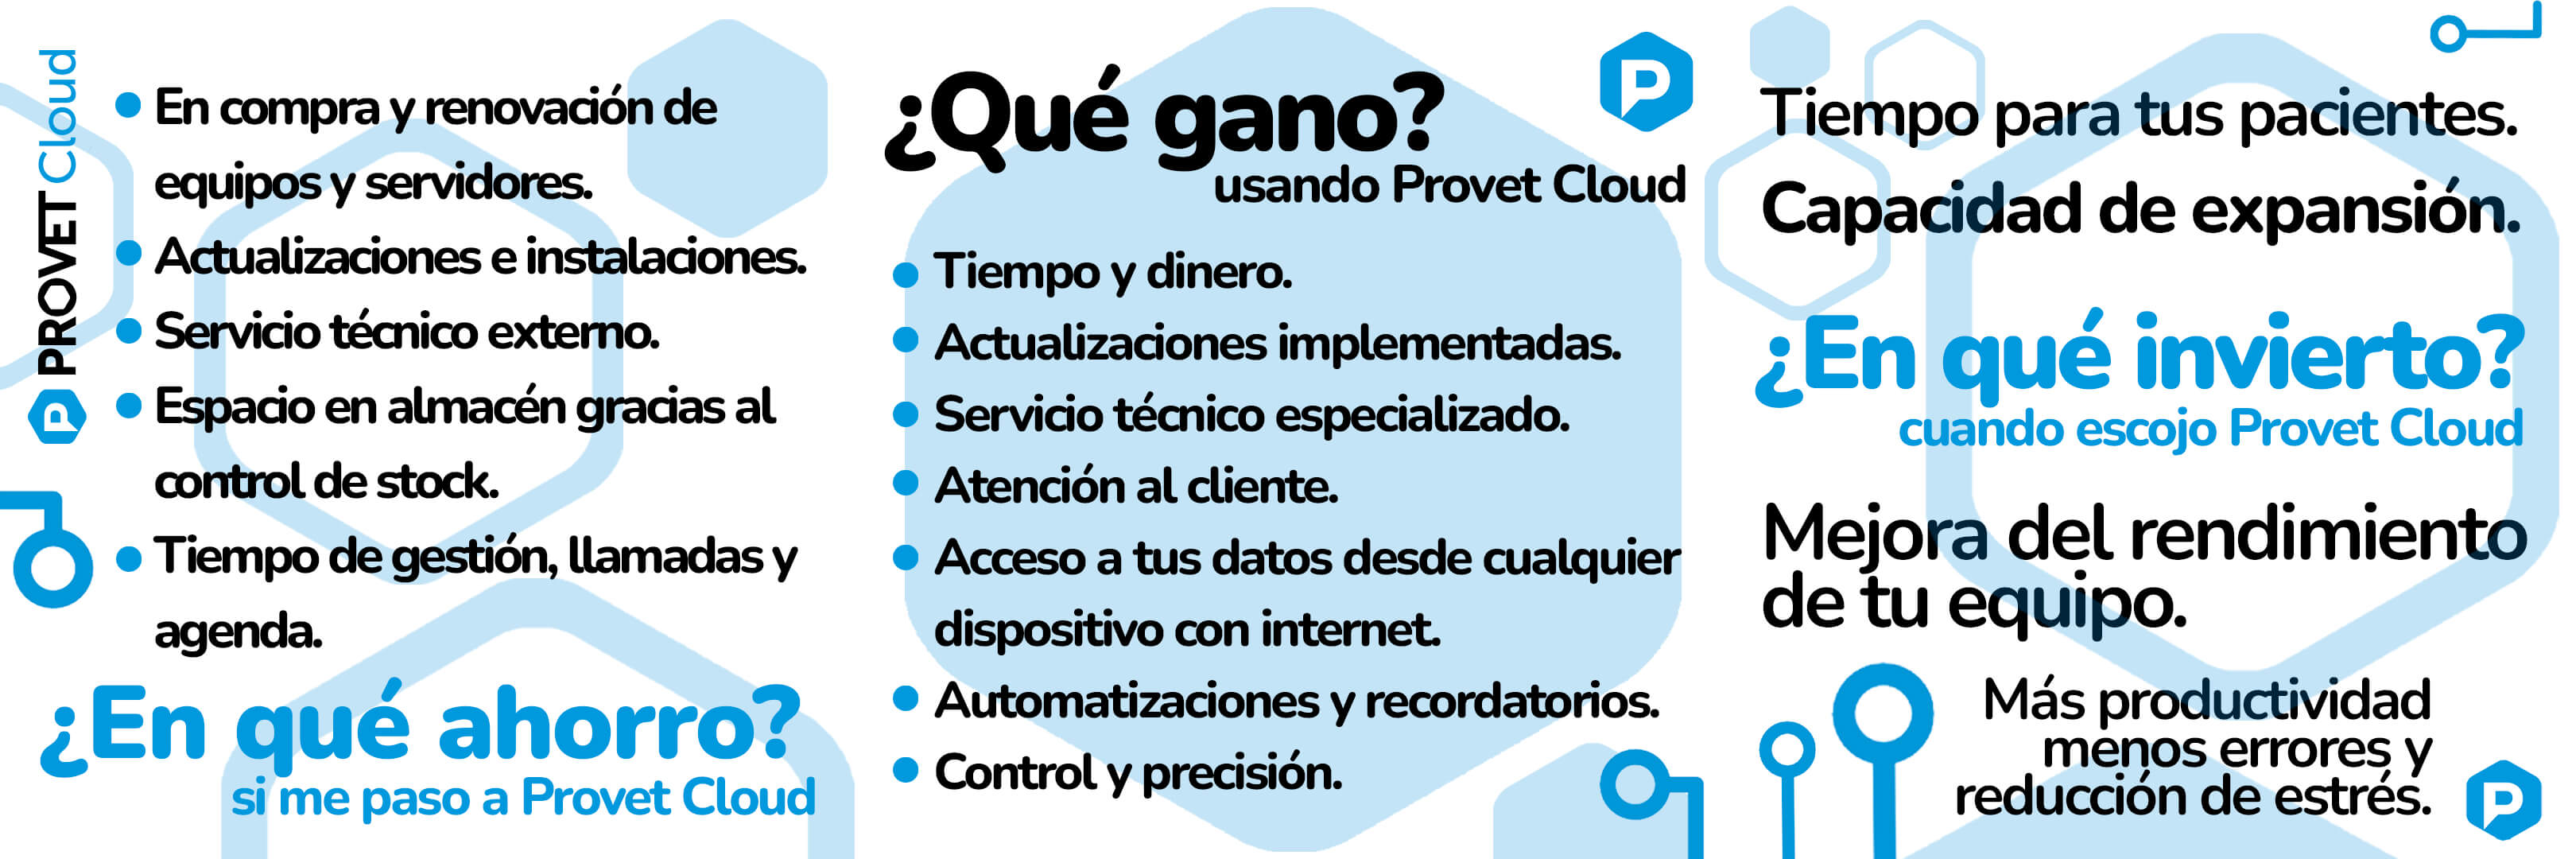 PIC2 Provet Cloud ES - Artículo 02 (1)